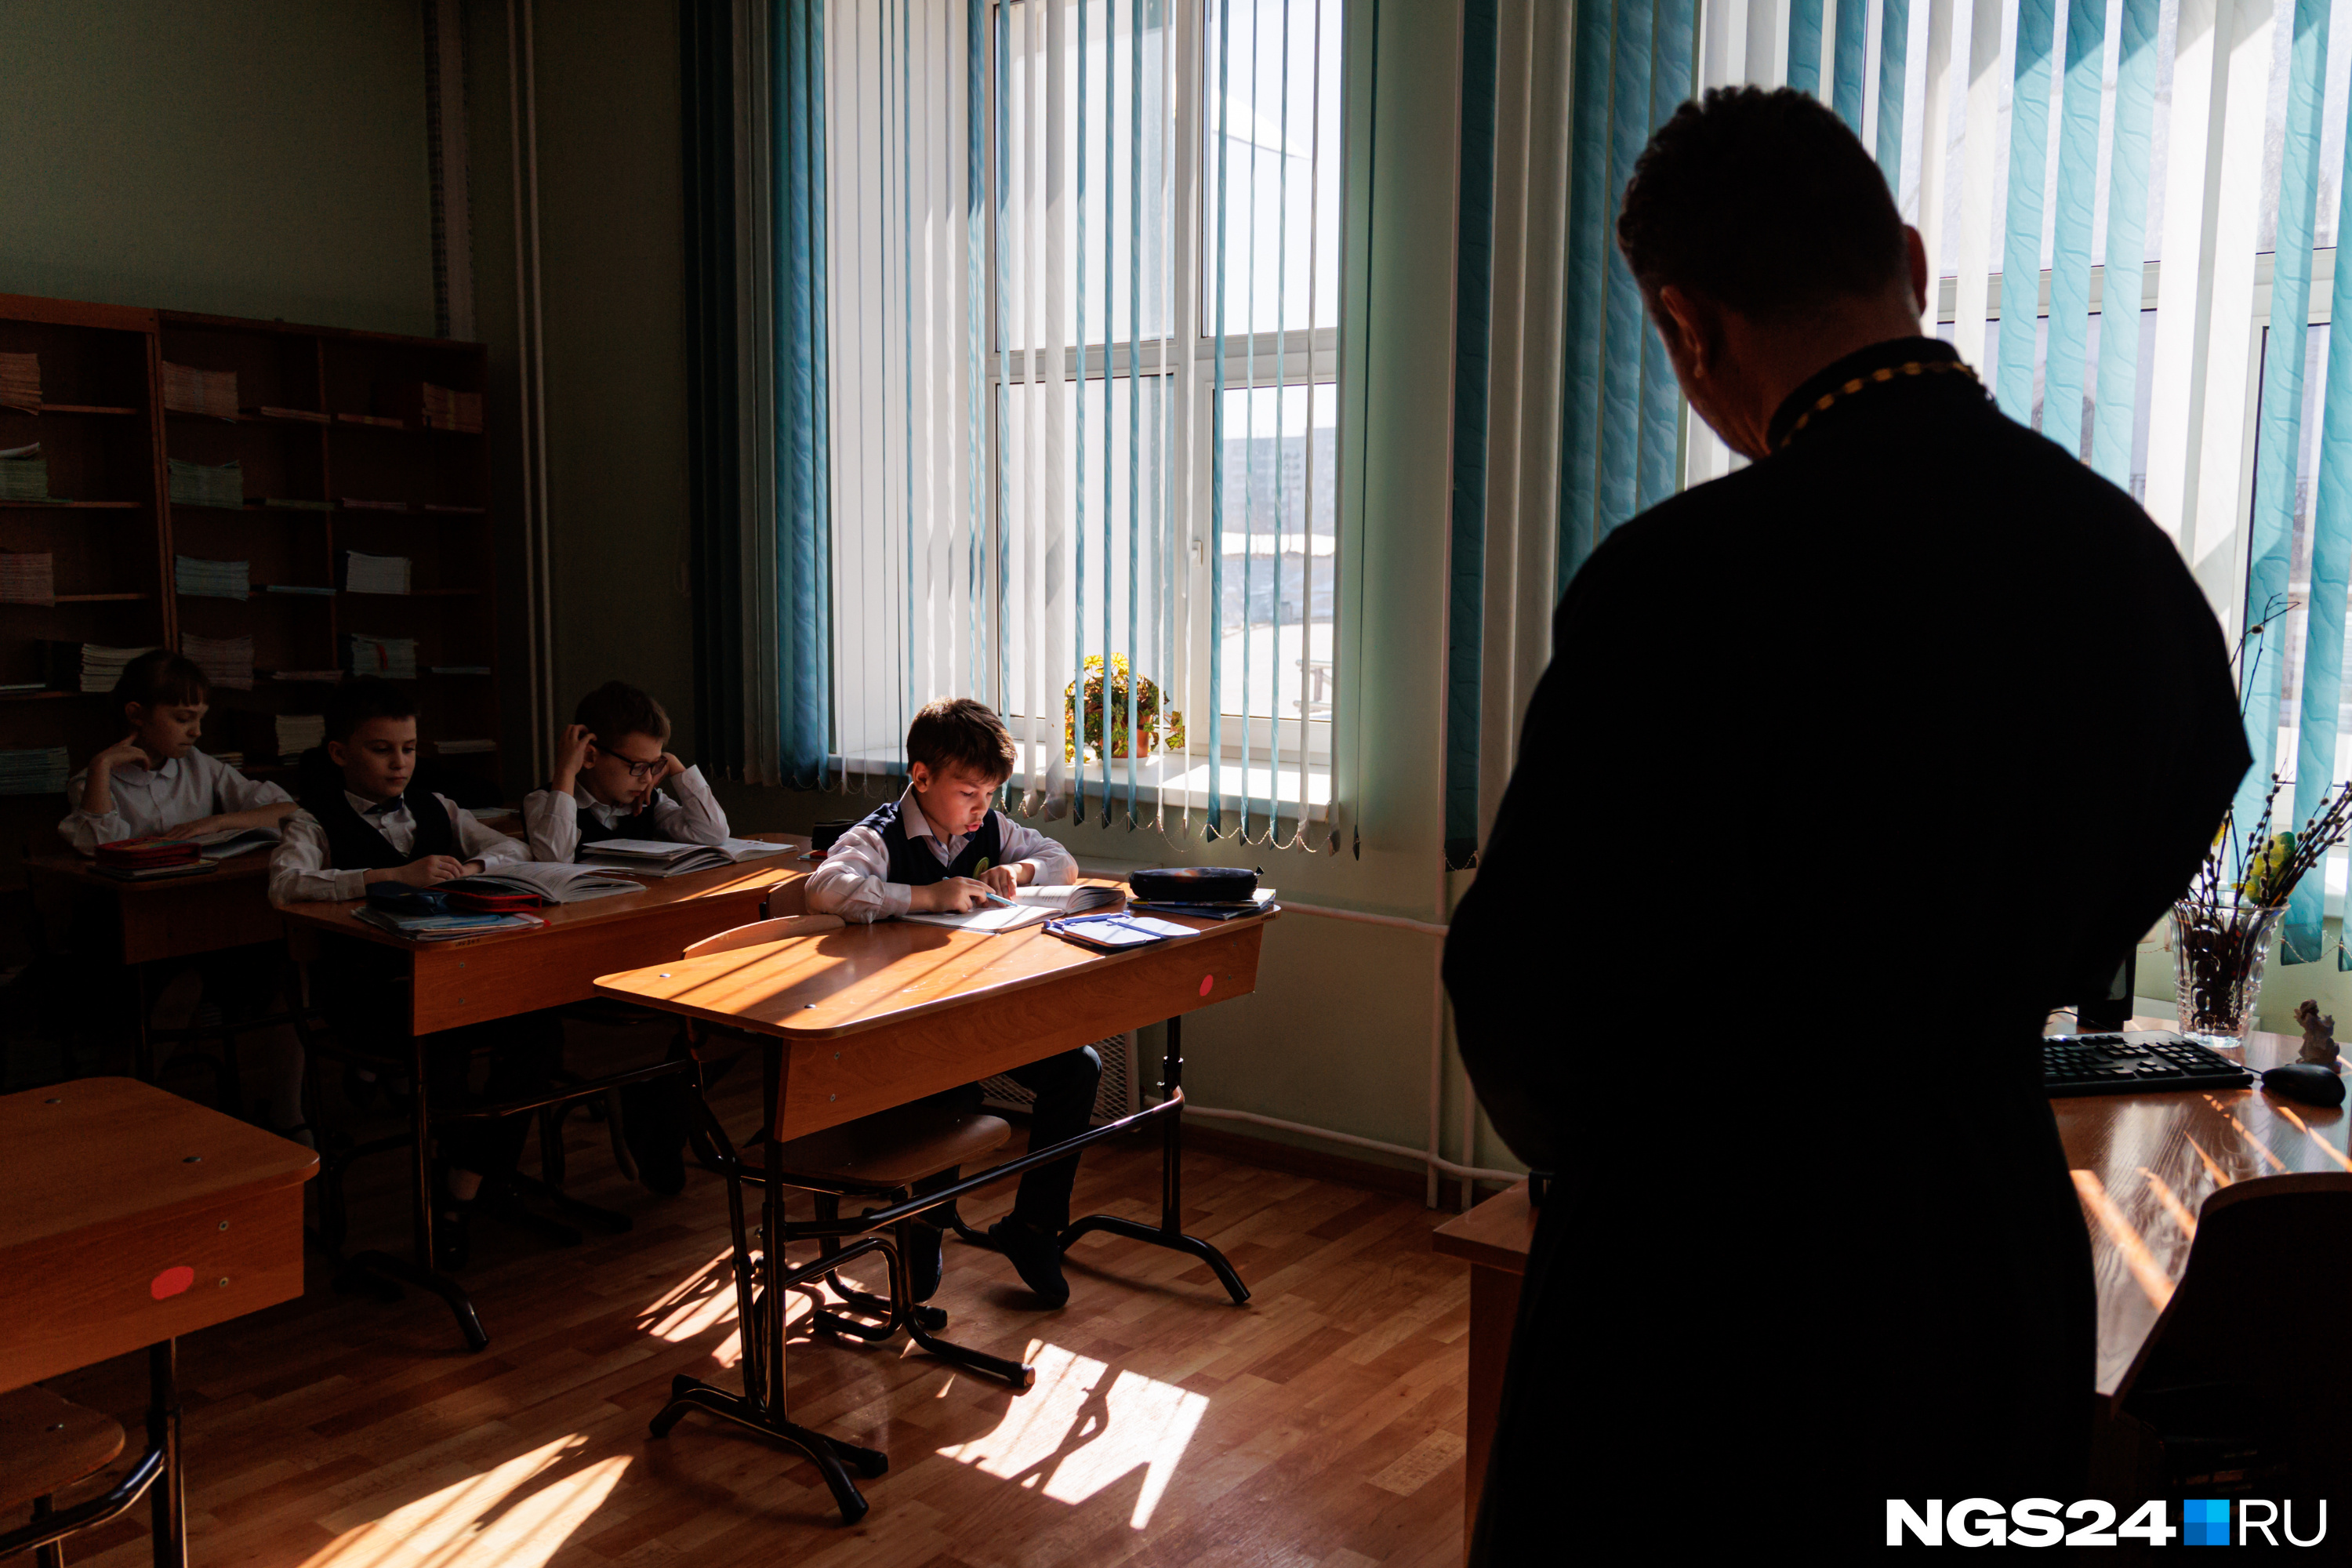 Едят в трапезной и молятся Богородице перед уроками: что происходит за стенами единственной православной гимназии Красноярска